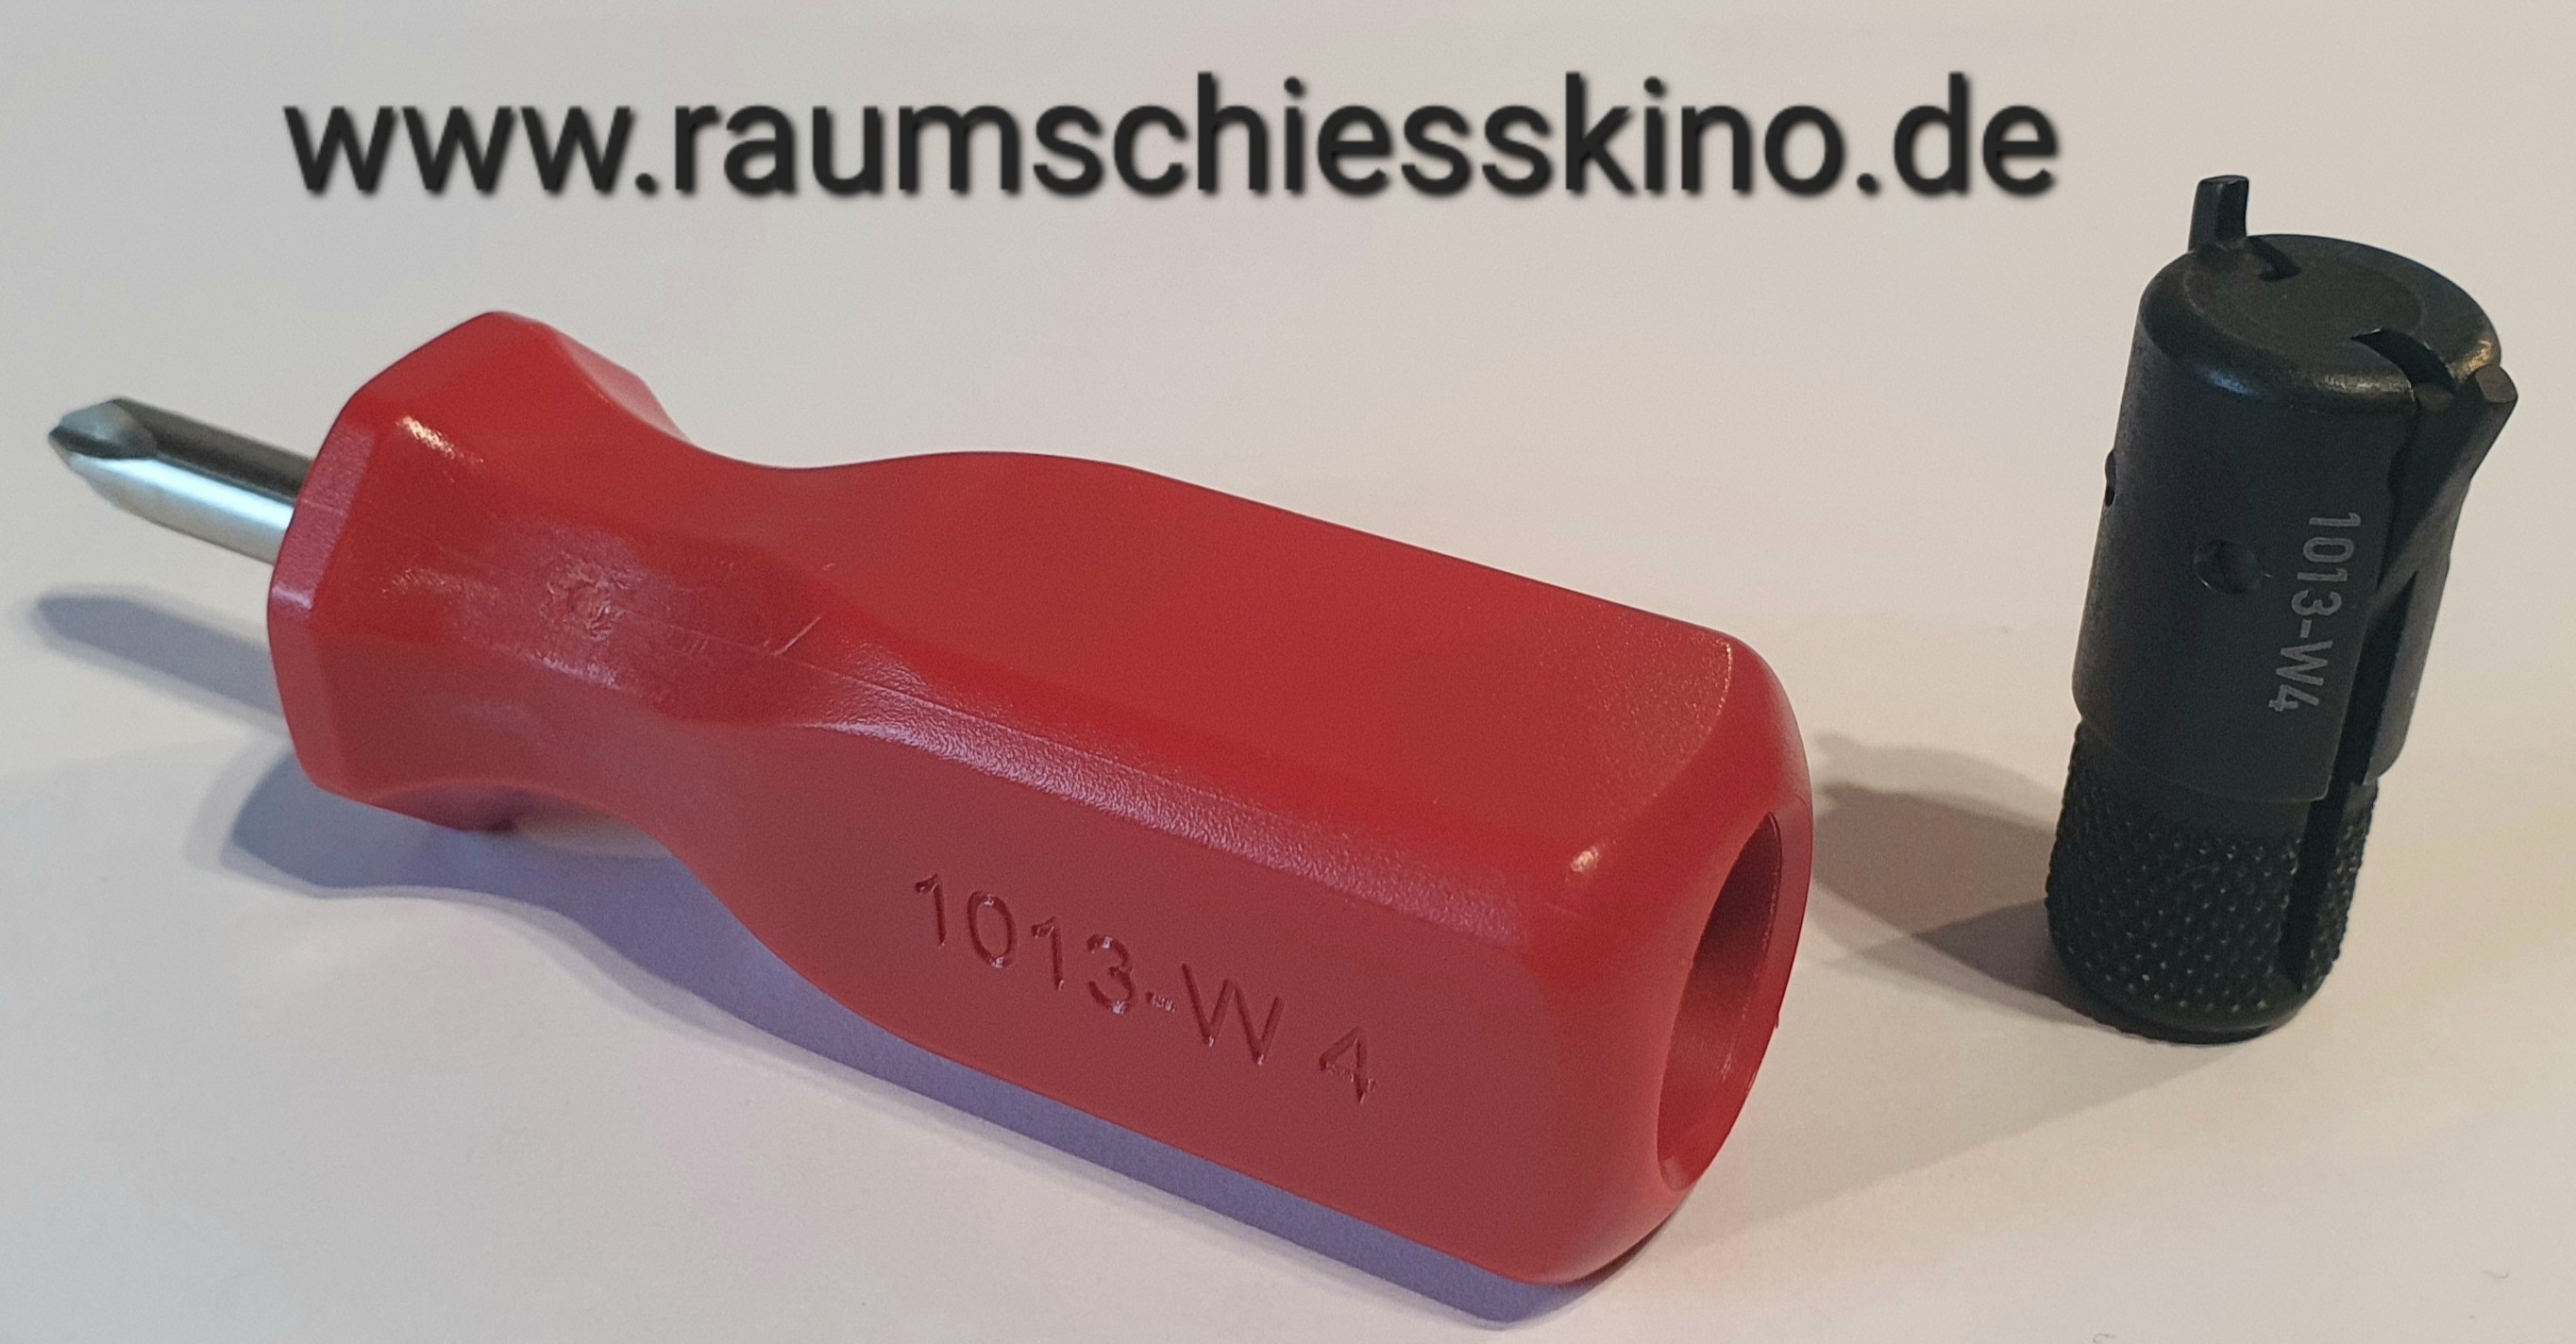 HK Visiersteller-Werkzeug 1013-W4 im roten Schraubendreher PH2